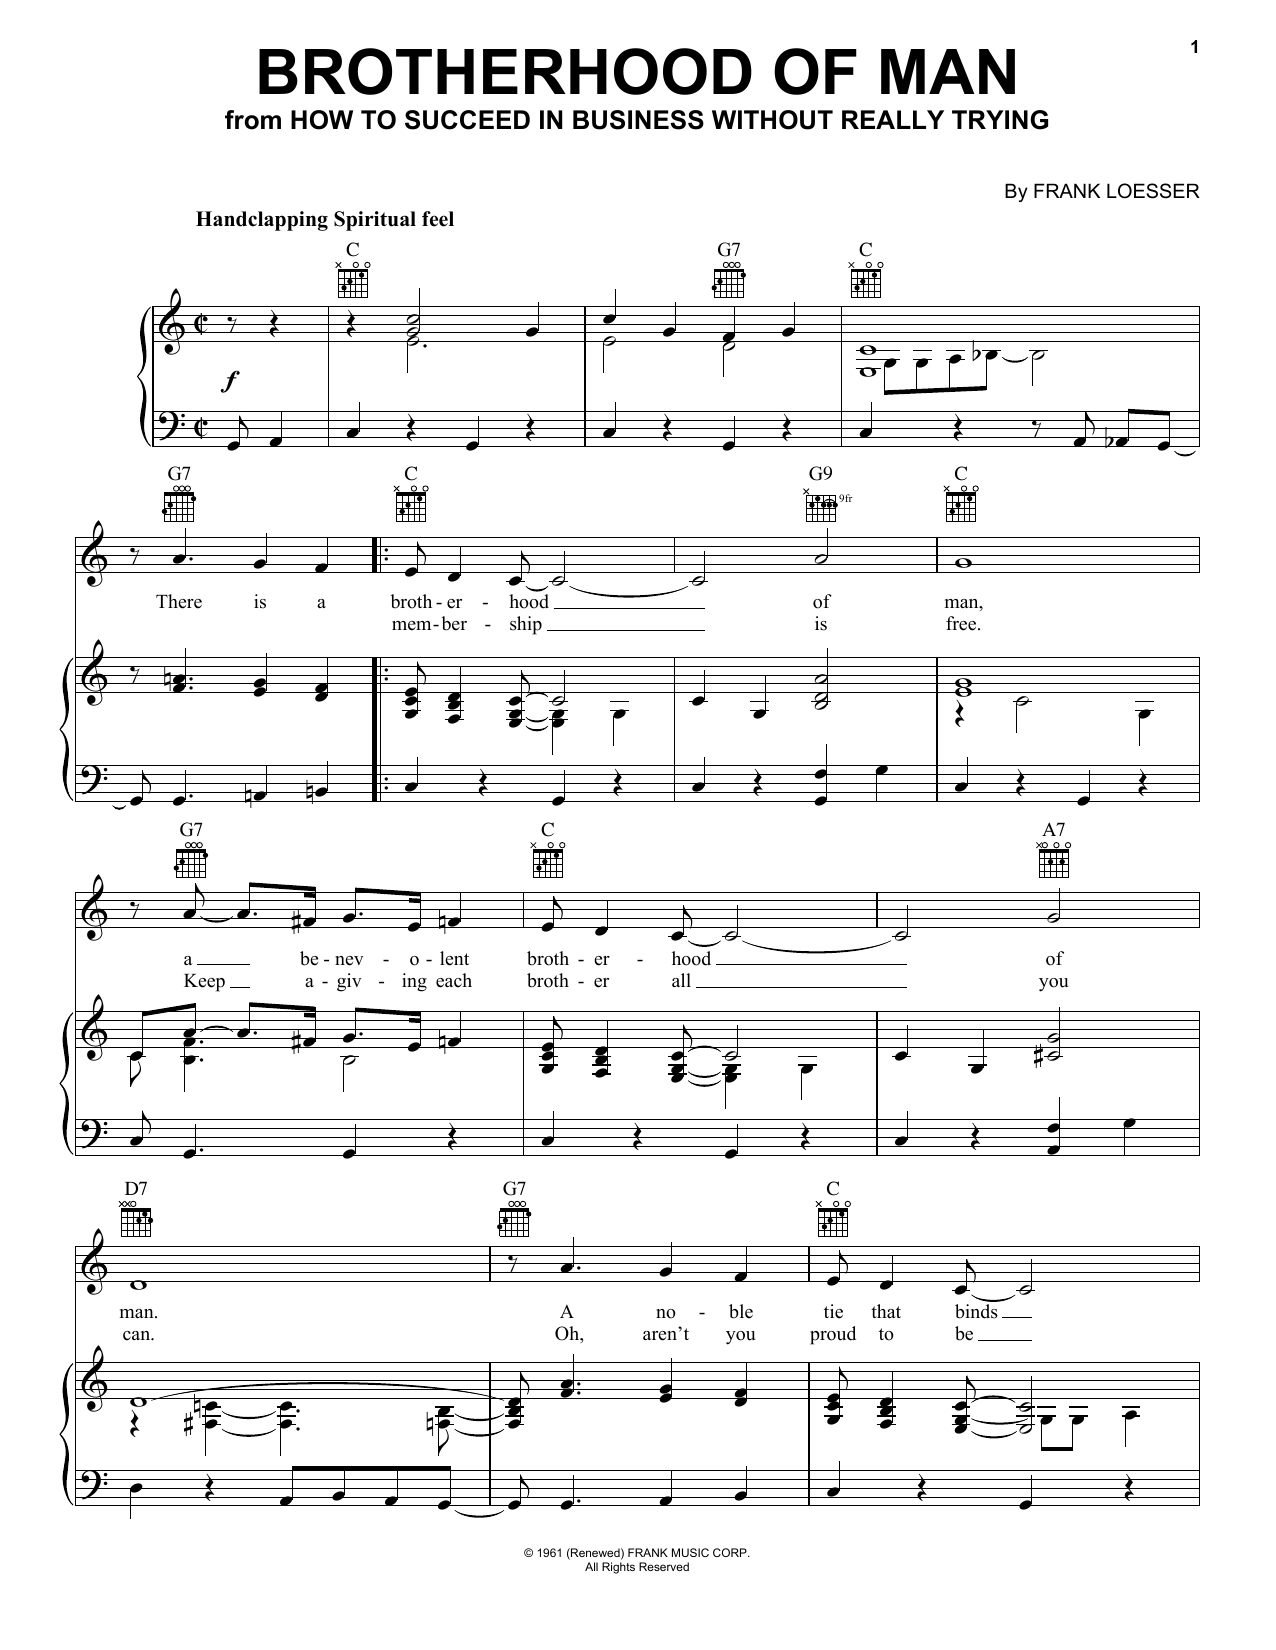 Frank Loesser 'Brotherhood Of Man' Sheet Music | Download Printable PDF  Chords & Score at FreshSheetMusic.com